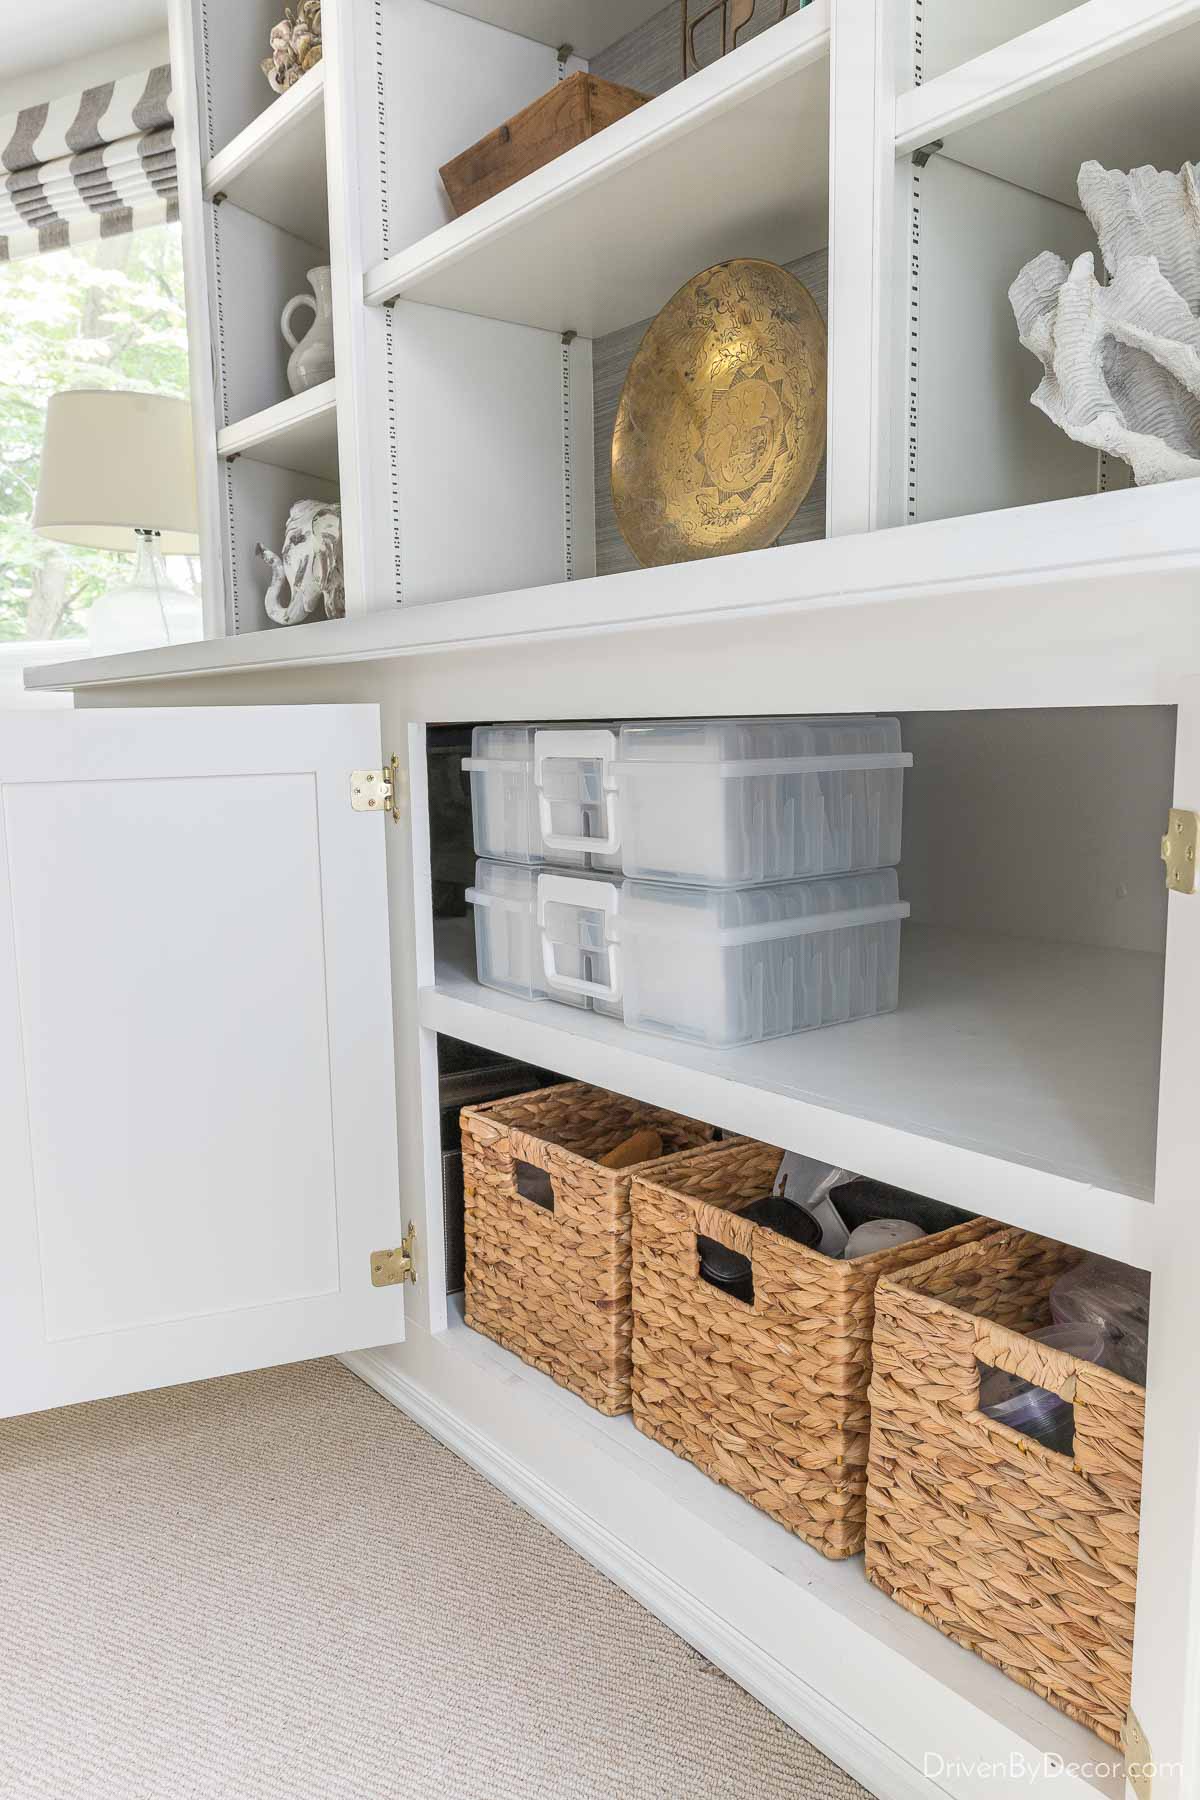 Home Organization & Storage